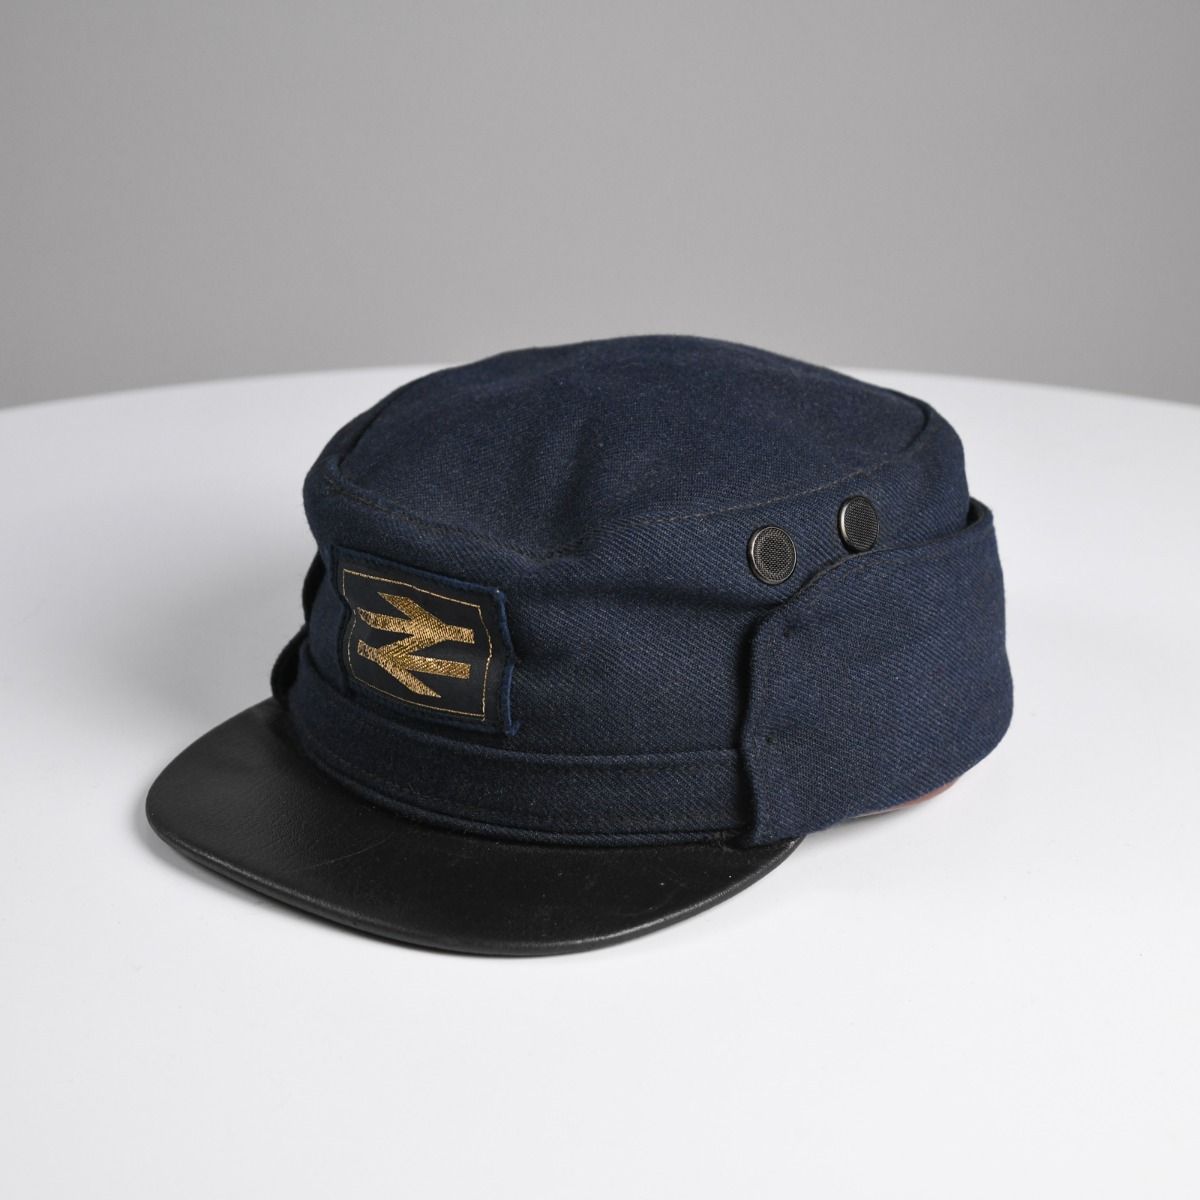 Vintage 1980s British Rail Hat